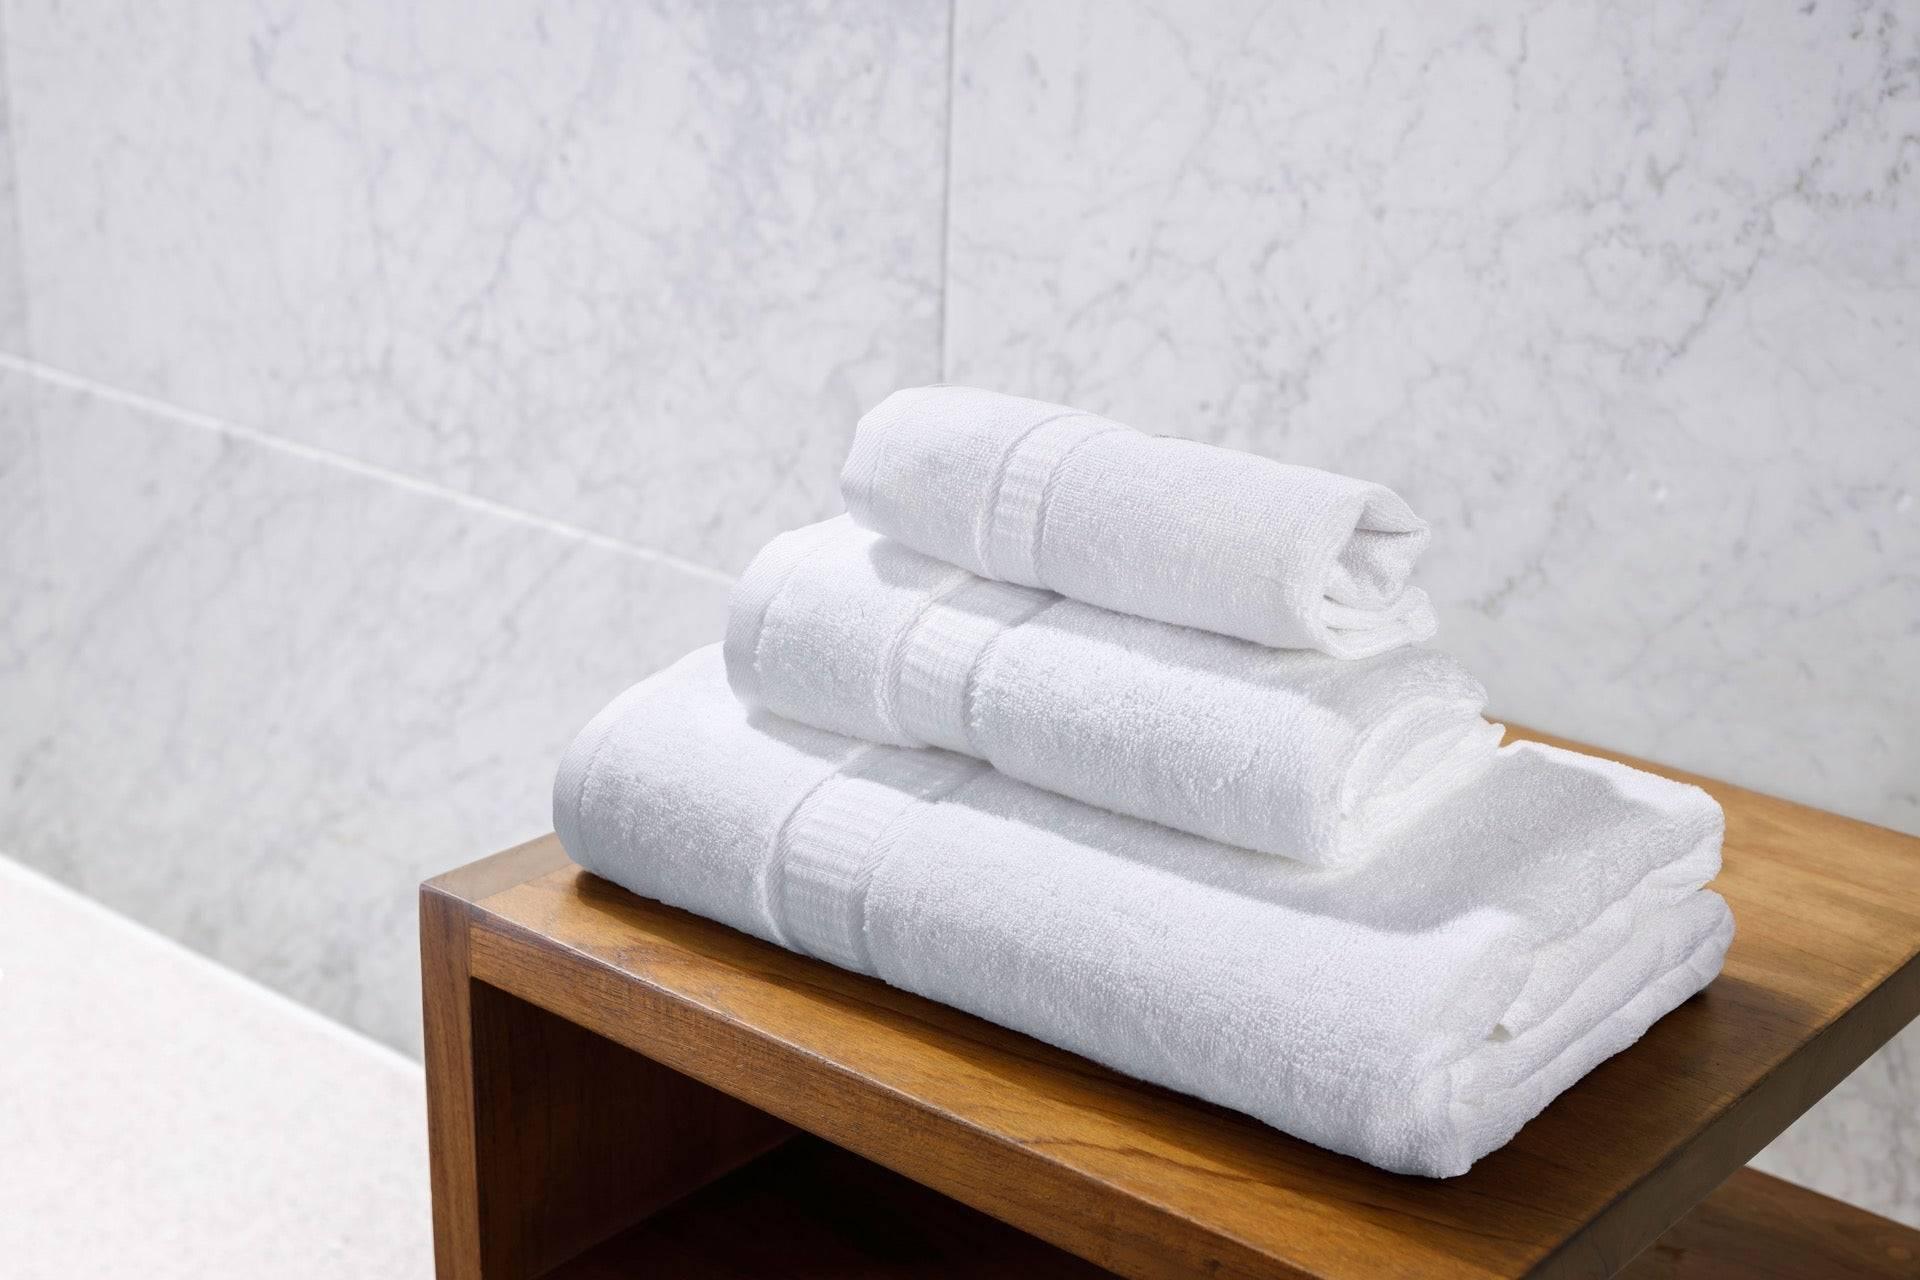 Bamboo Jacquard Towel Set